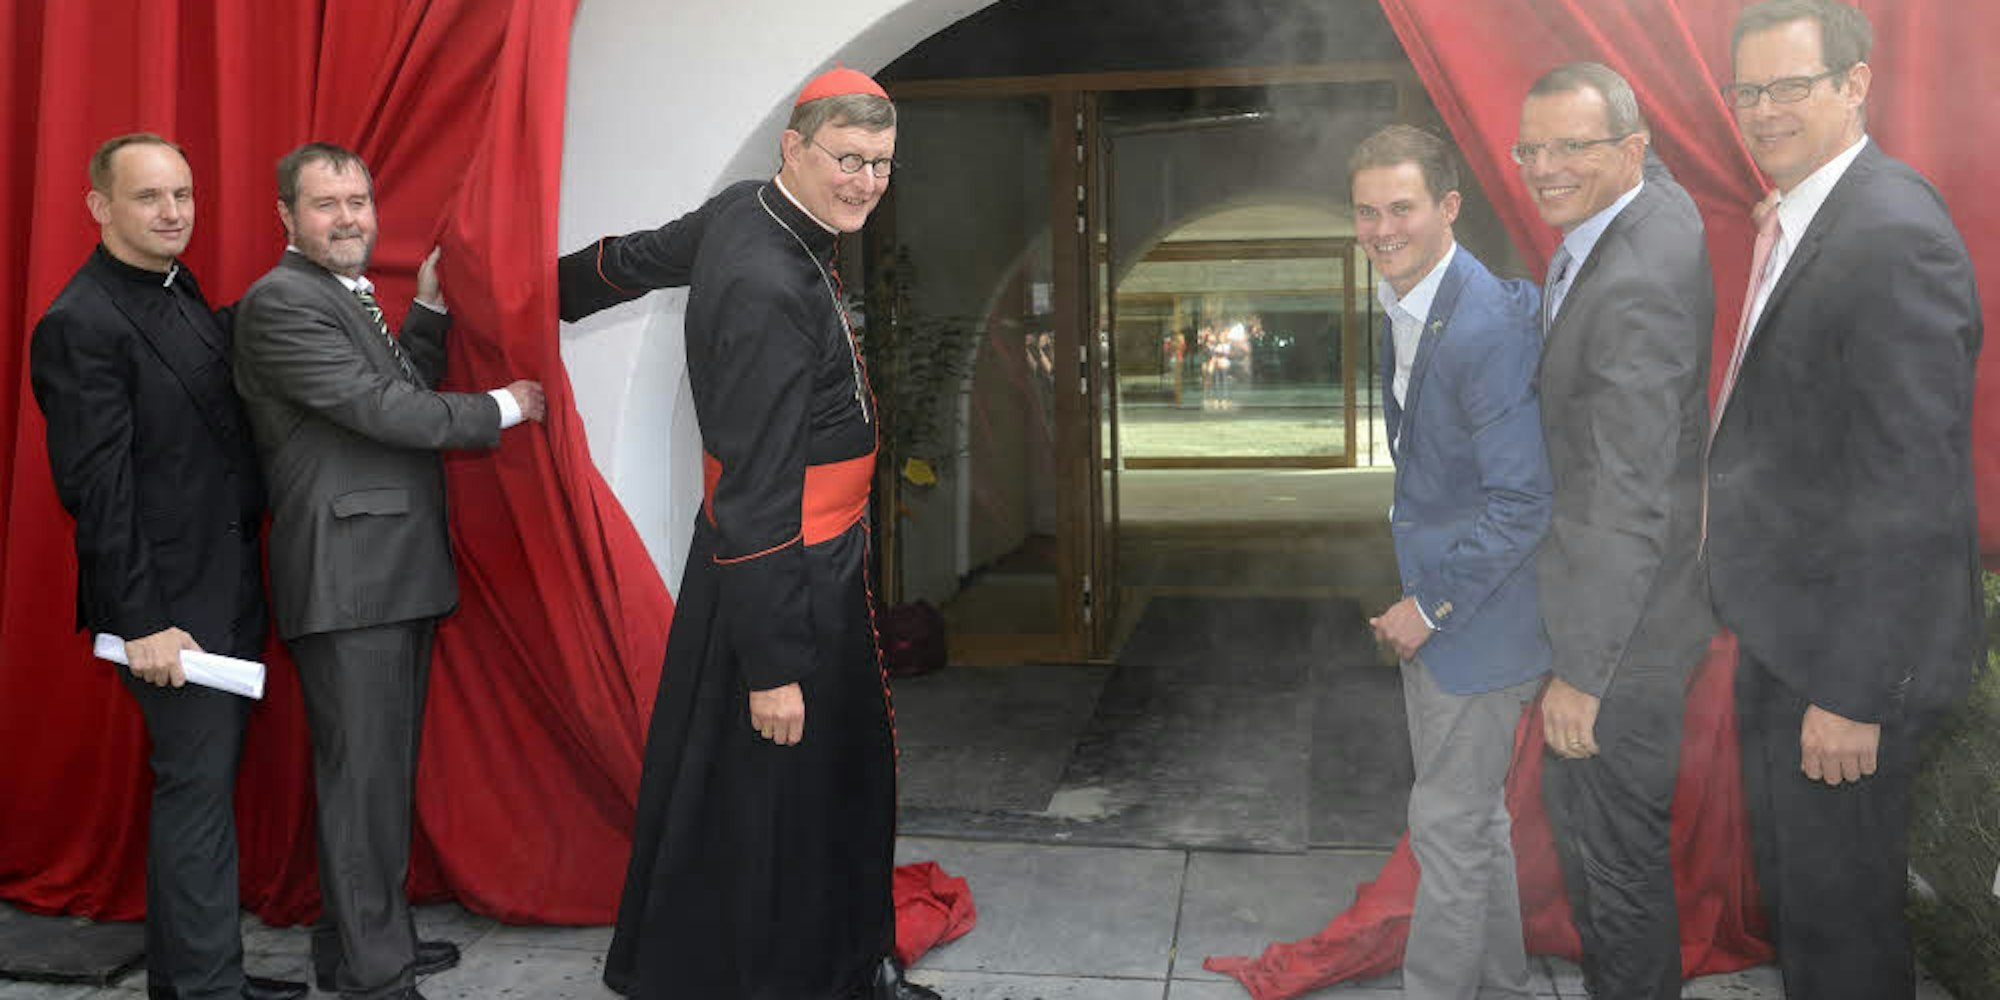 Der Vorhang fiel nicht, er wurde aufgezogen: Mit einigem Weihrauch wurde Haus Altenberg von Kardinal Woelki wiedereröffnet.